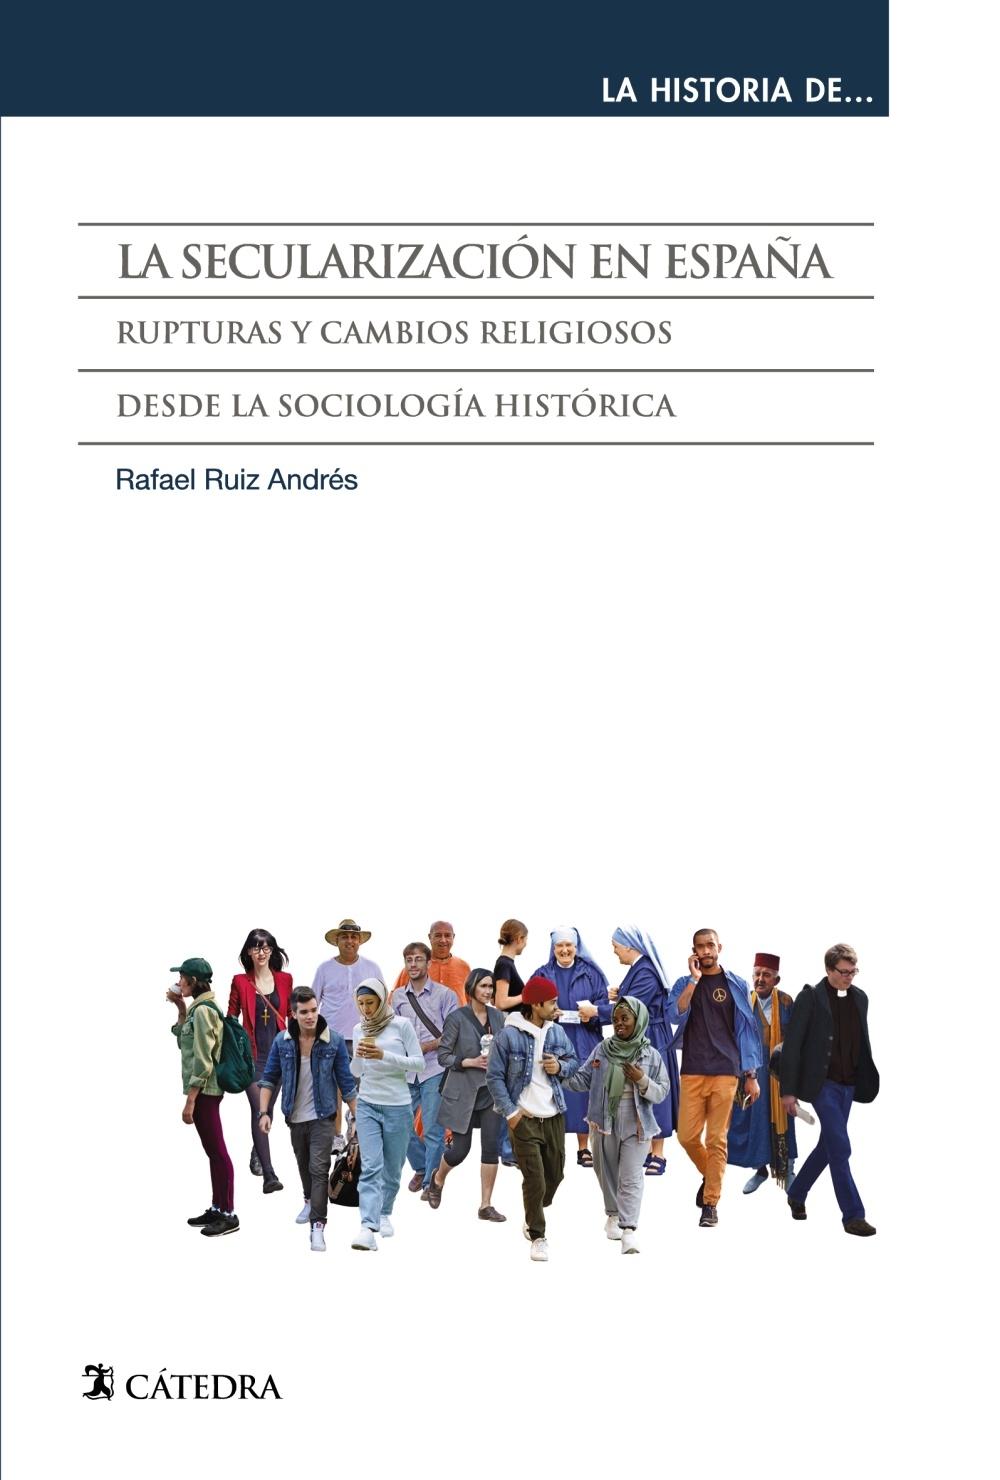 La Secularización en España "Rupturas y Cambios Religiosos desde la Sociología Histórica". 